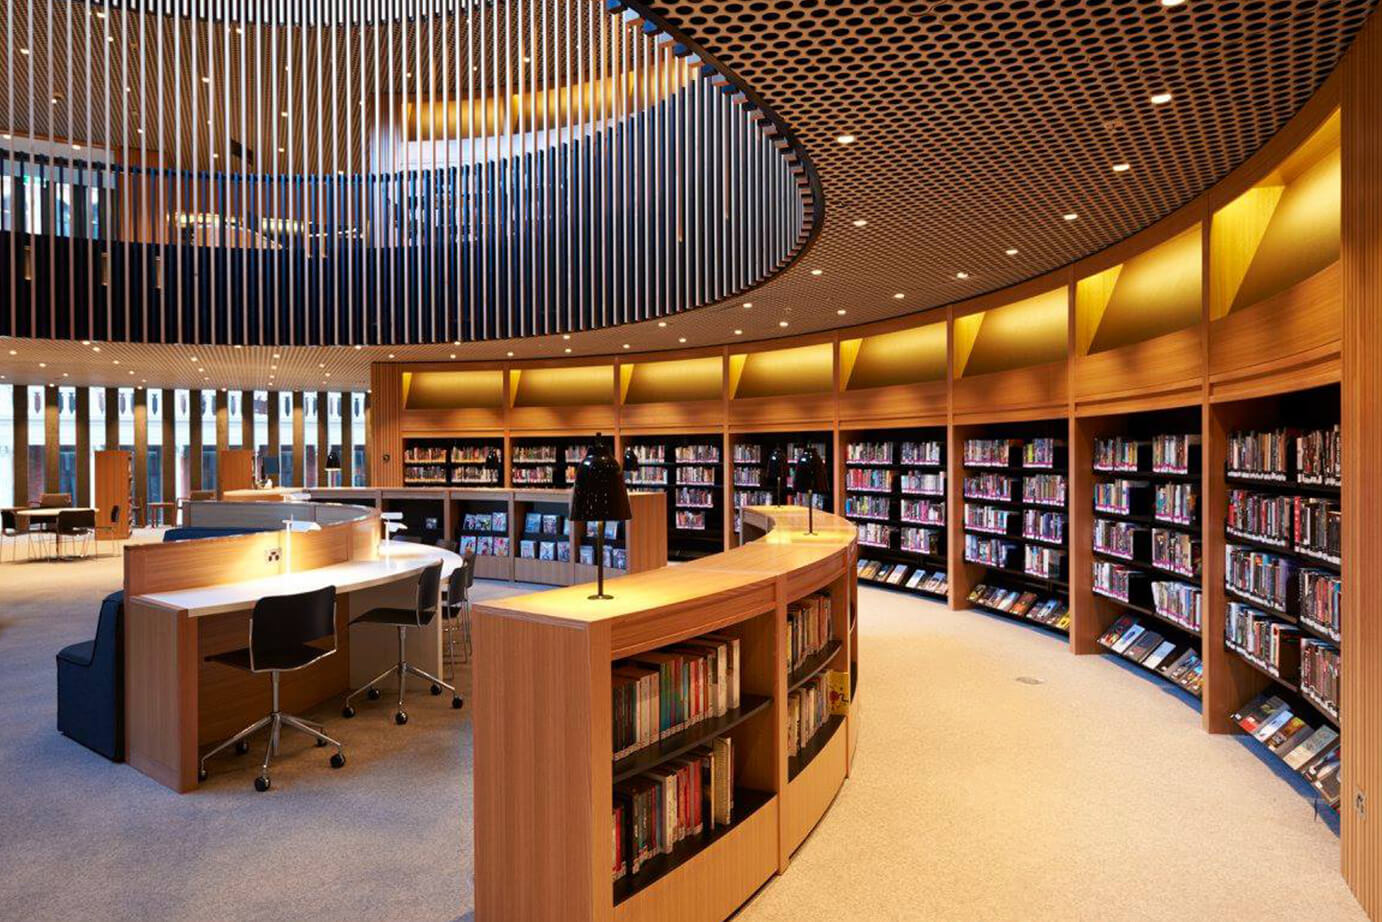 Library sites. Библиотека Японии читальный зал. Йельский университет библиотека. Современная библиотека. Интерьер современной библиотеки.